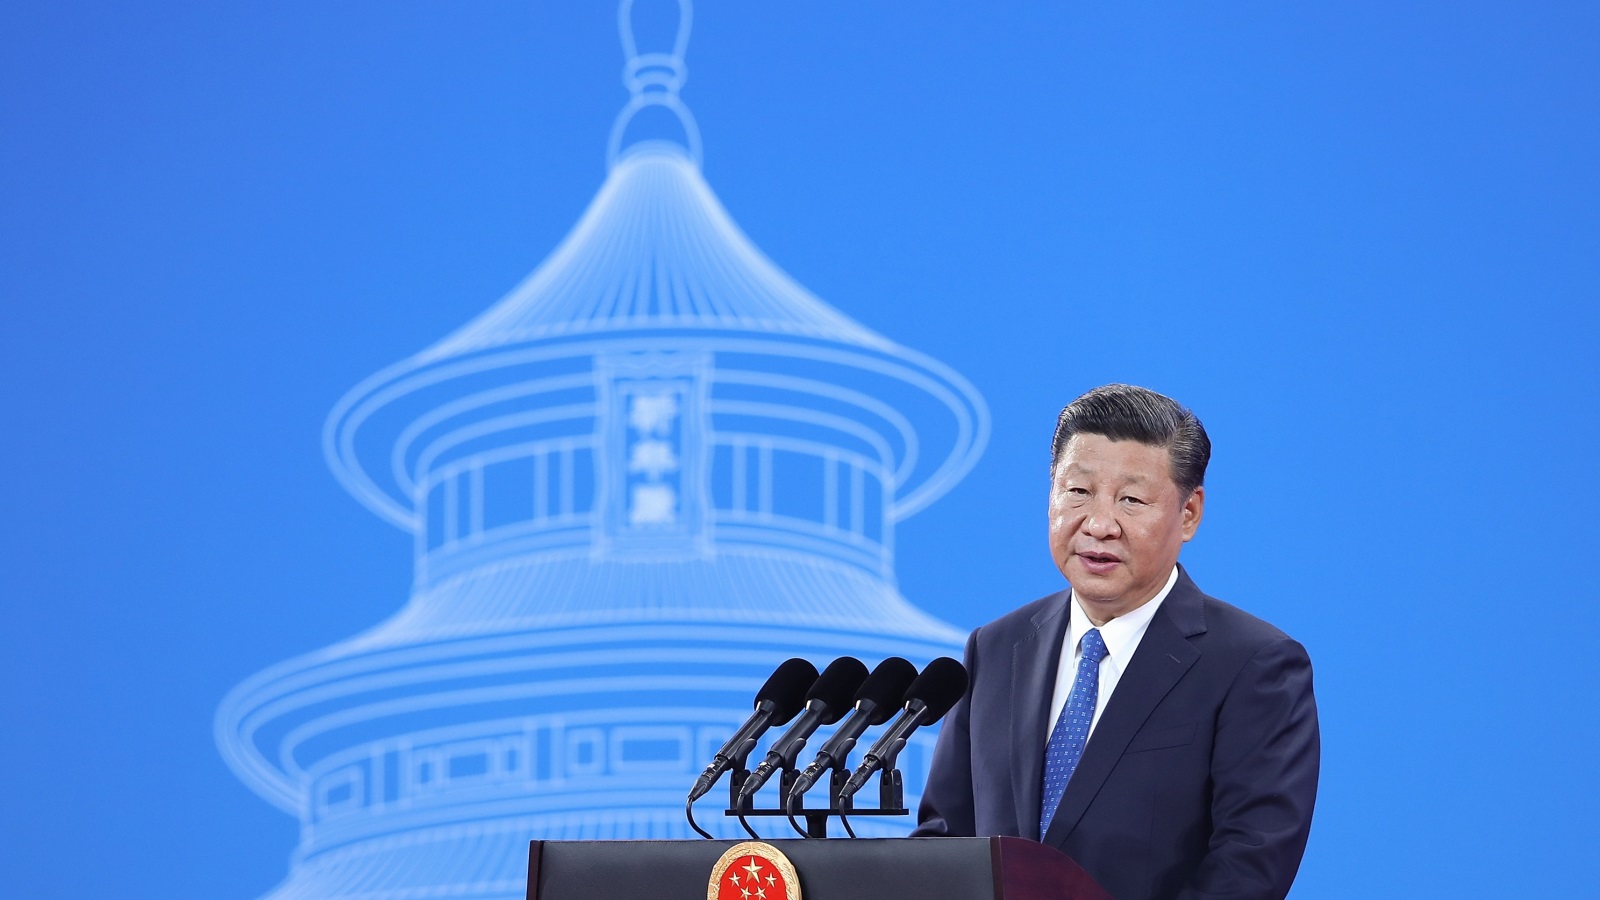 ‪الرئيس الصيني دعا إلى تعزيز الأمن المشترك‬ الرئيس الصيني دعا إلى تعزيز الأمن المشترك (غيتي)